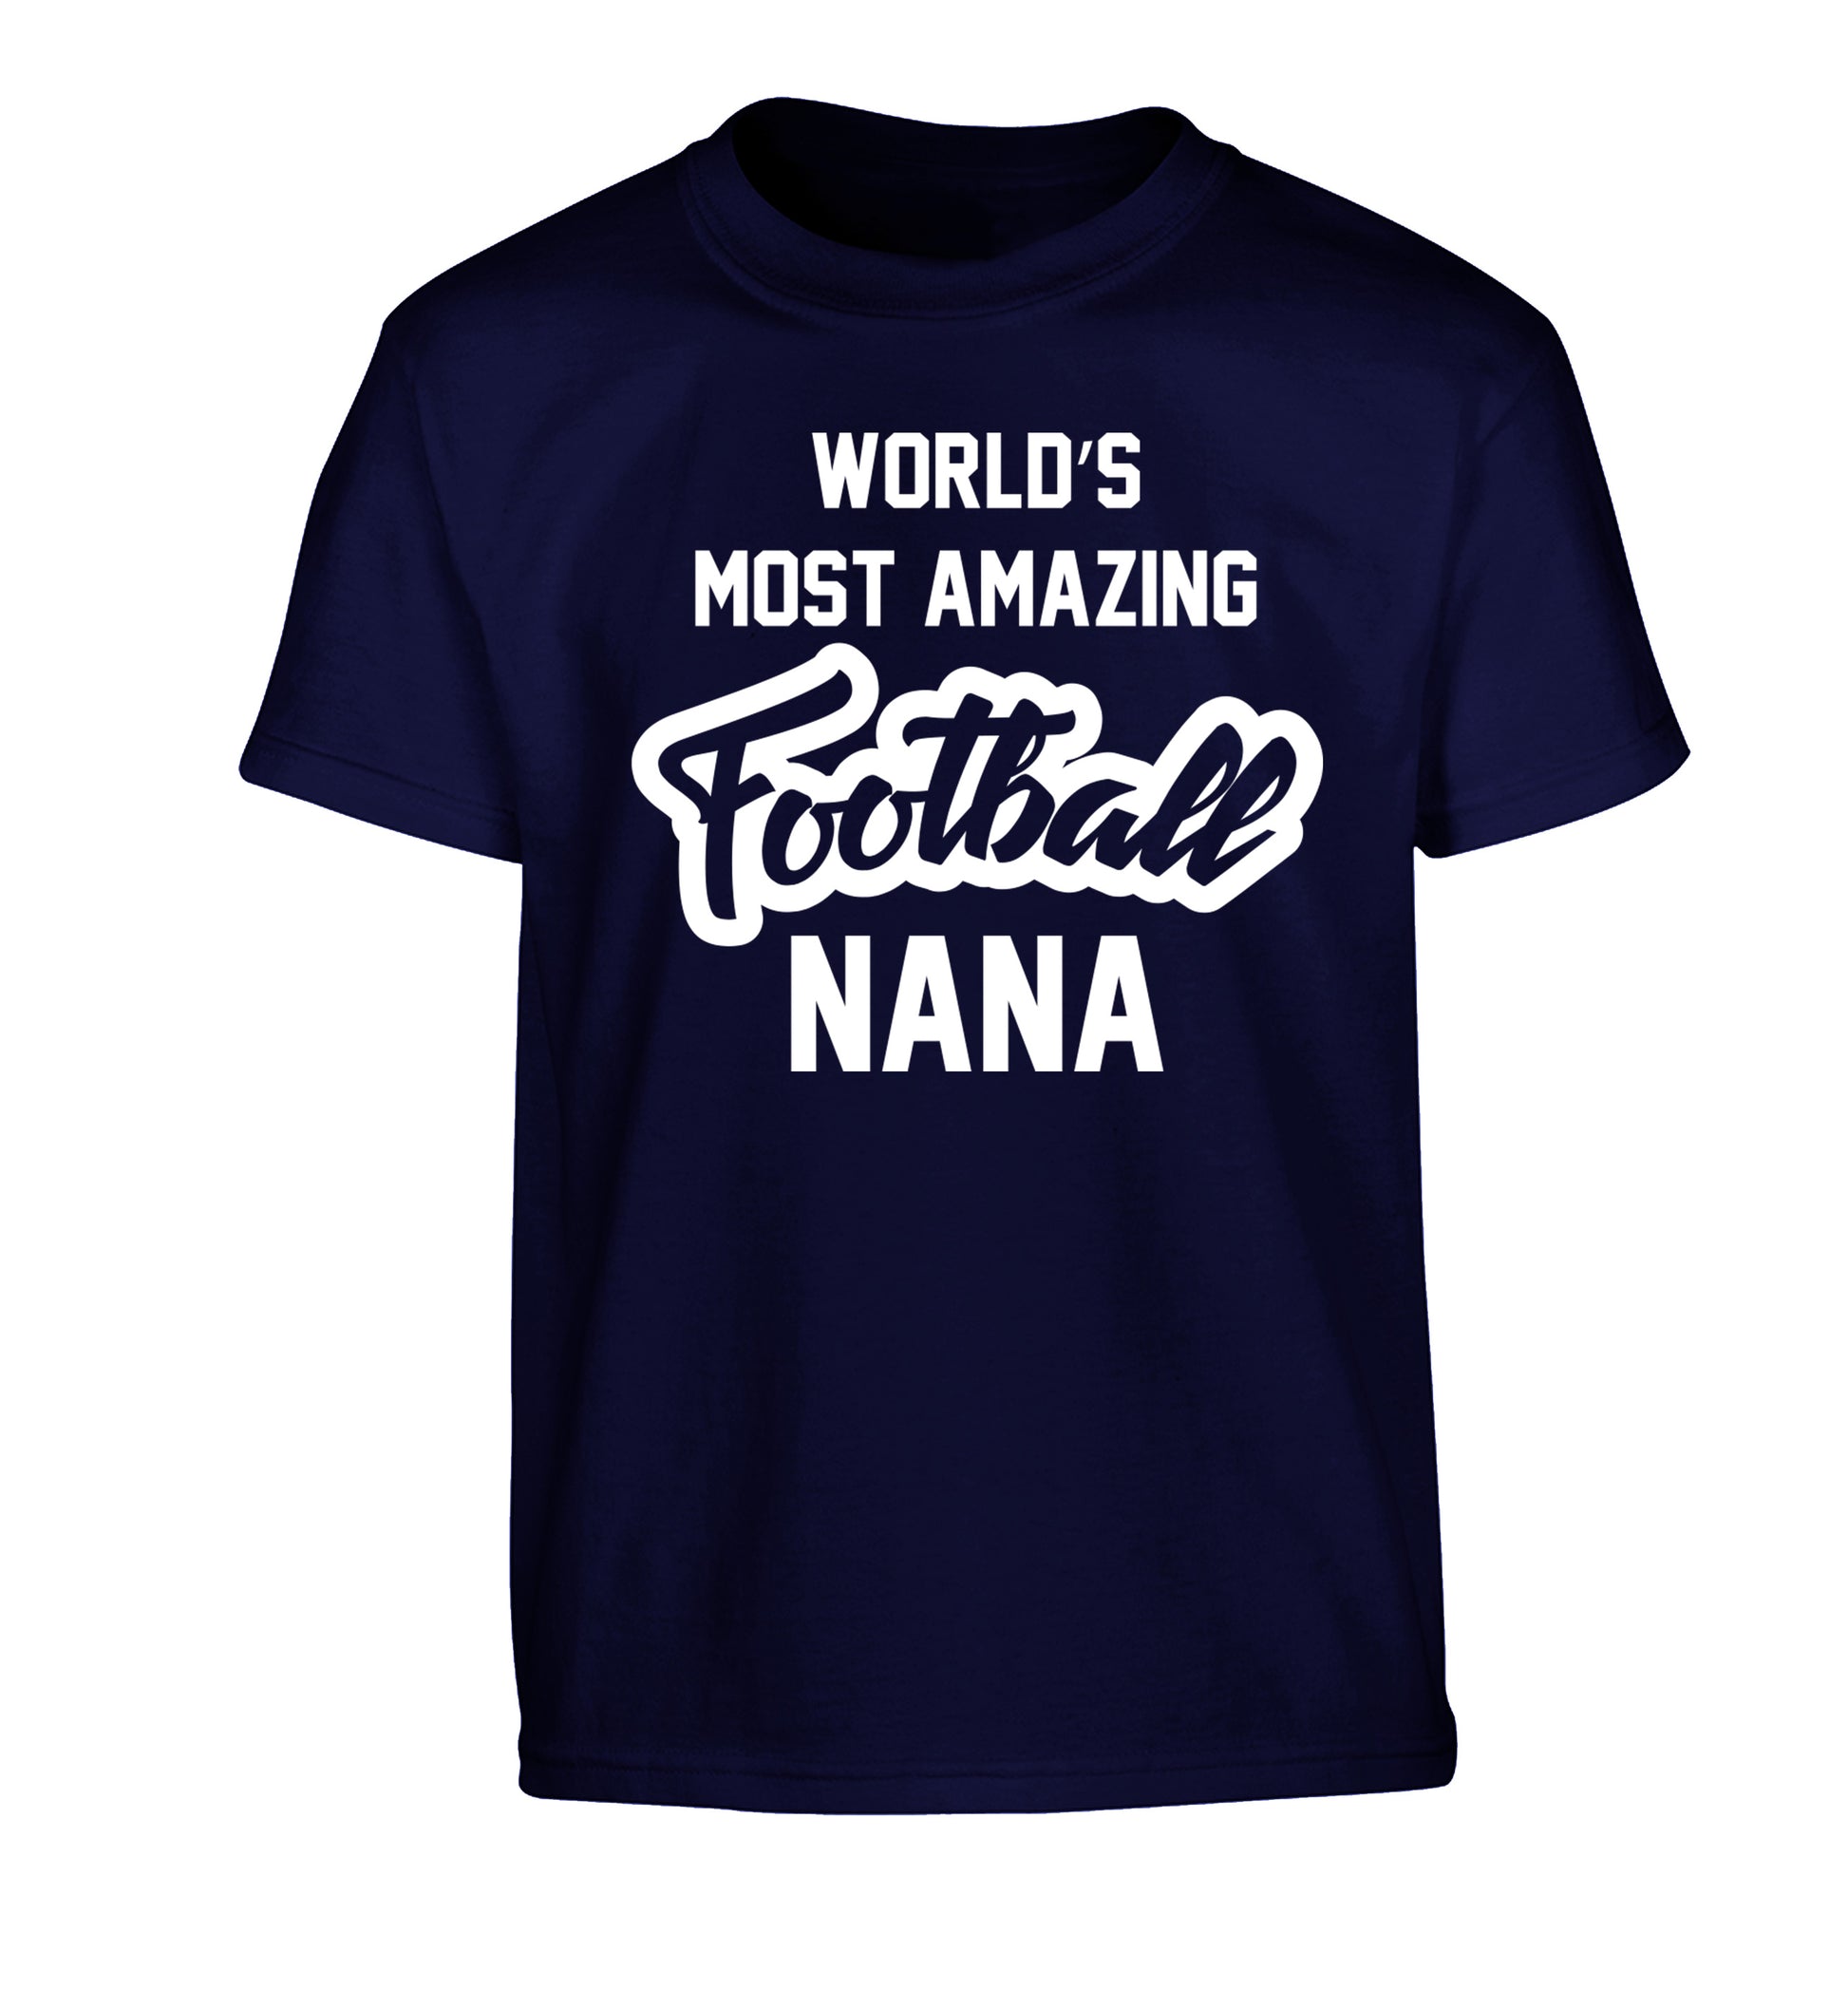 Worlds most amazing football nana Children's navy Tshirt 12-14 Years